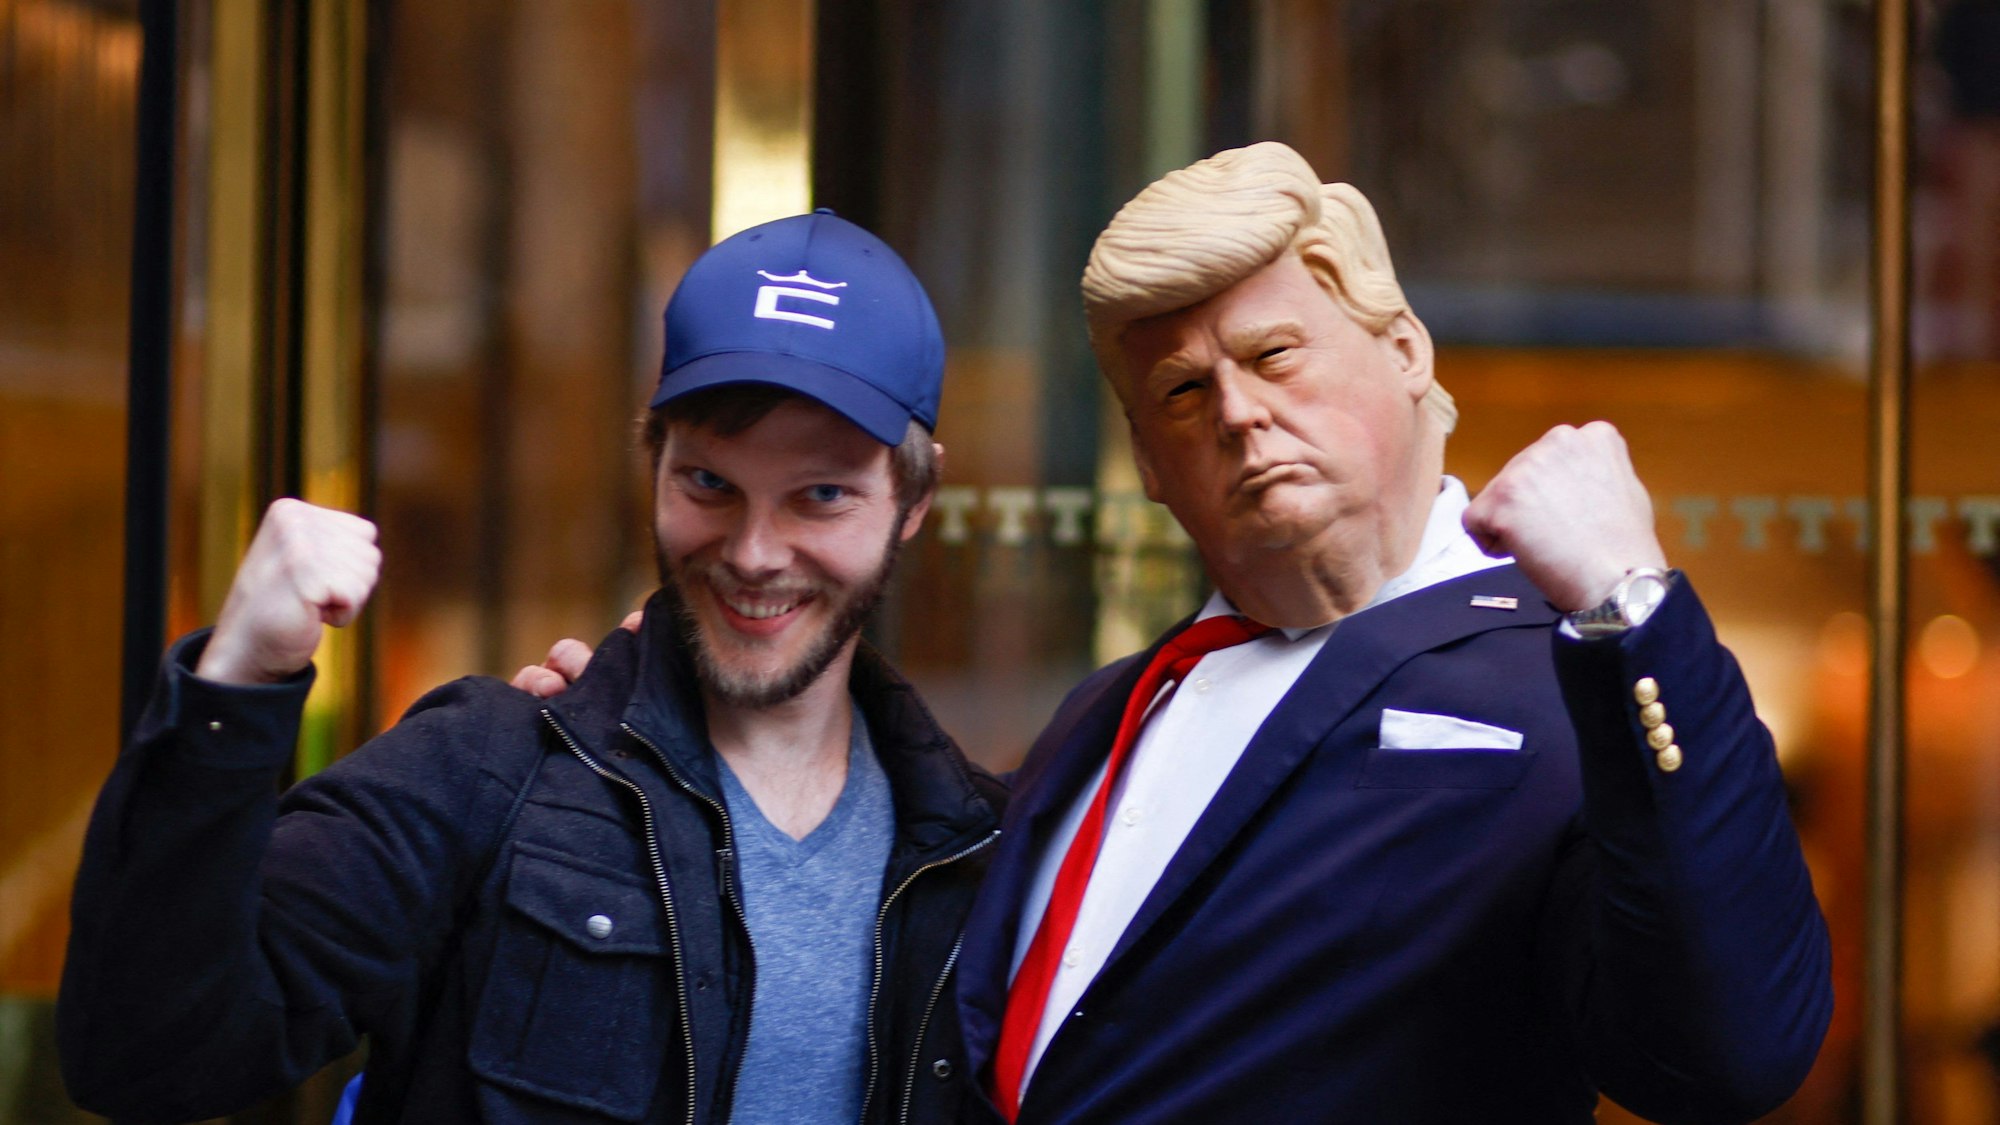 Auch Trumps Gegner machen bereits mobil: Ein Aktivist in der Maske des Ex-Präsidenten posiert vor dem Trump-Tower in Manhattan, dem Sitz der Unternehmensgruppe des Milliardärs.